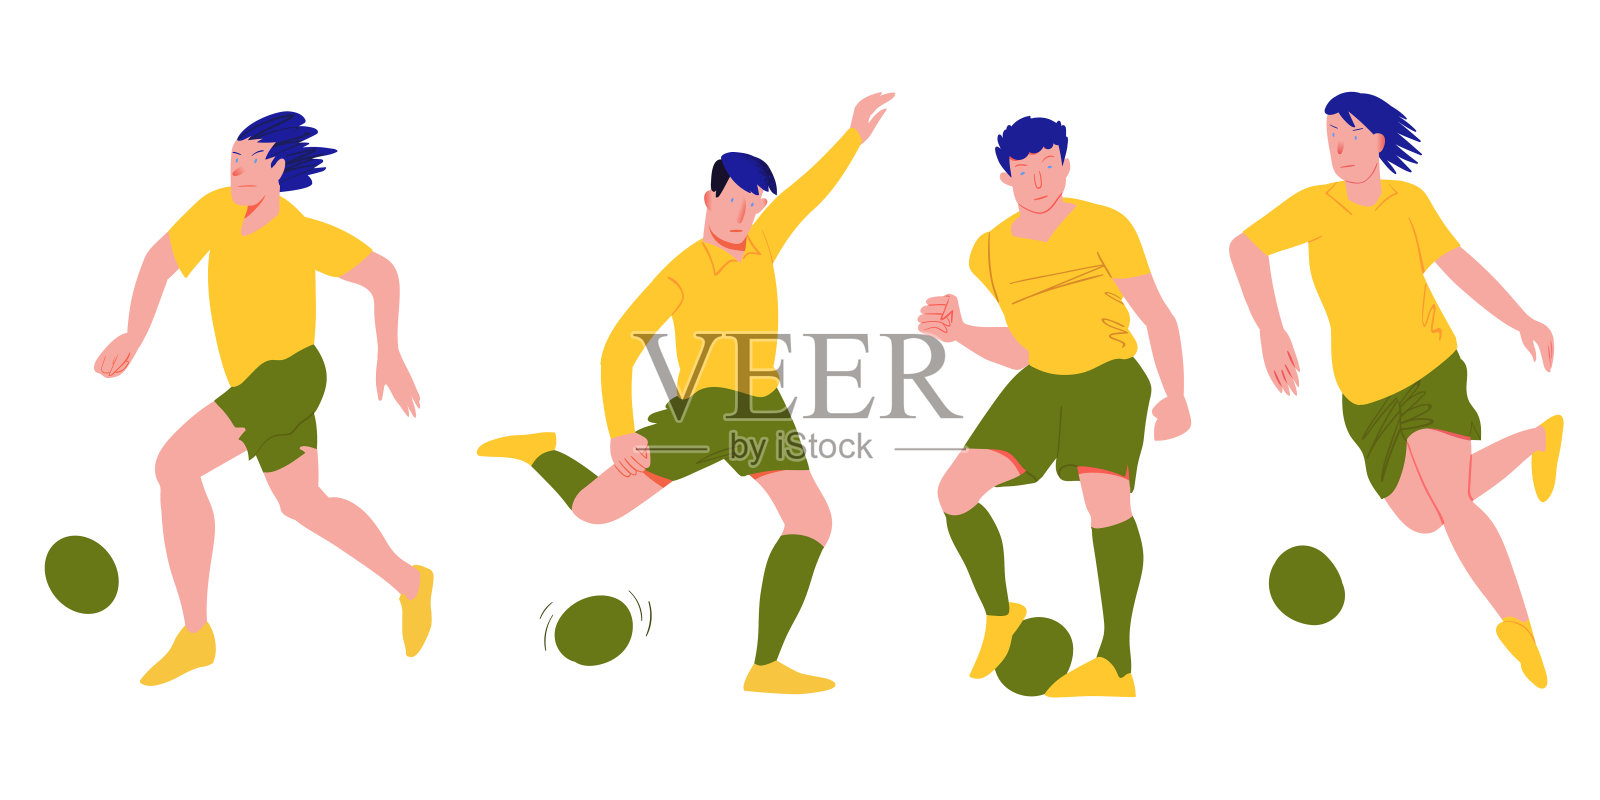 足球运动员。穿制服的足球队员。人们在动态的姿势。卡通平面矢量插图。孤立的对象。插画图片素材